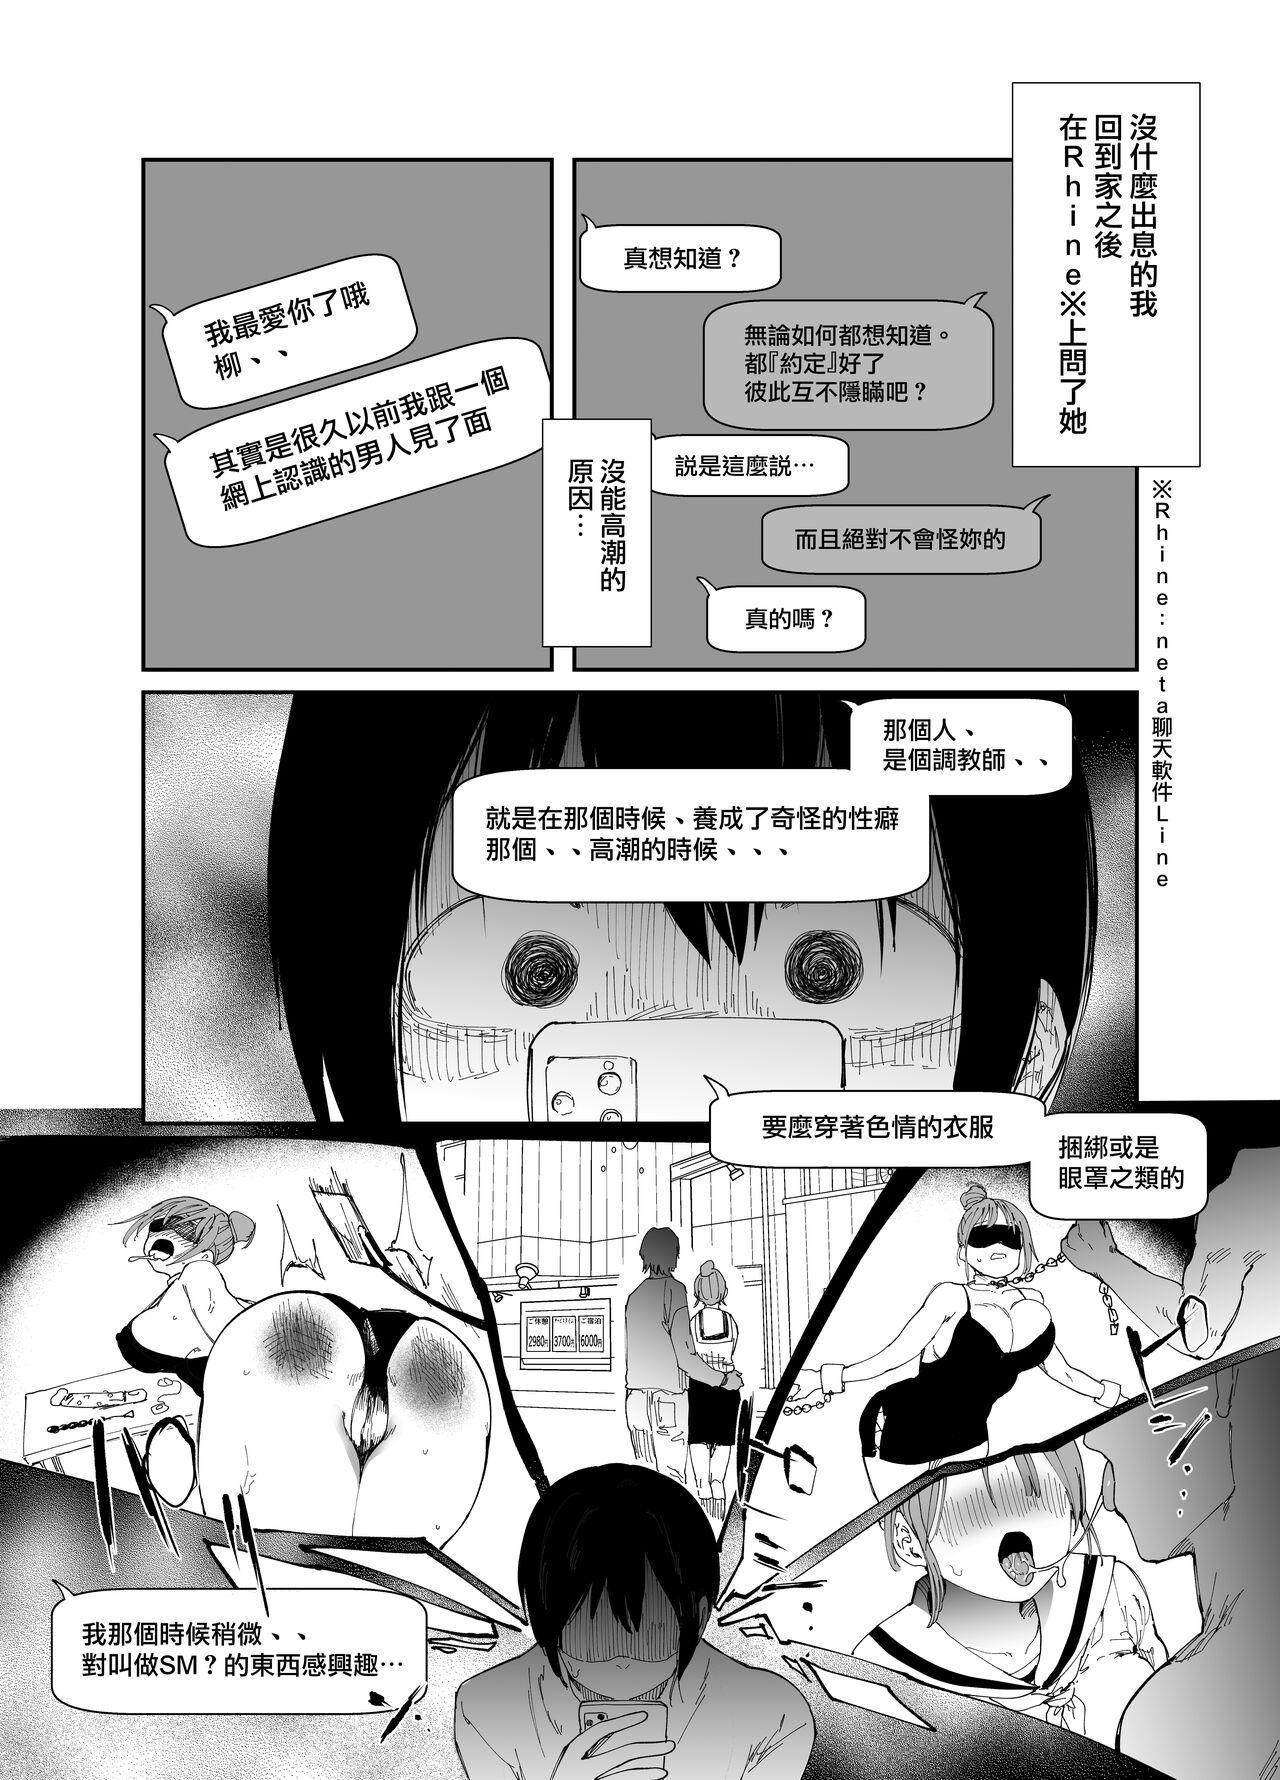 Chinese Saiai no Kanojo ni Goui no Ue, Kako no Otoko ni Dakarete Moratta. - Original Speculum - Page 6